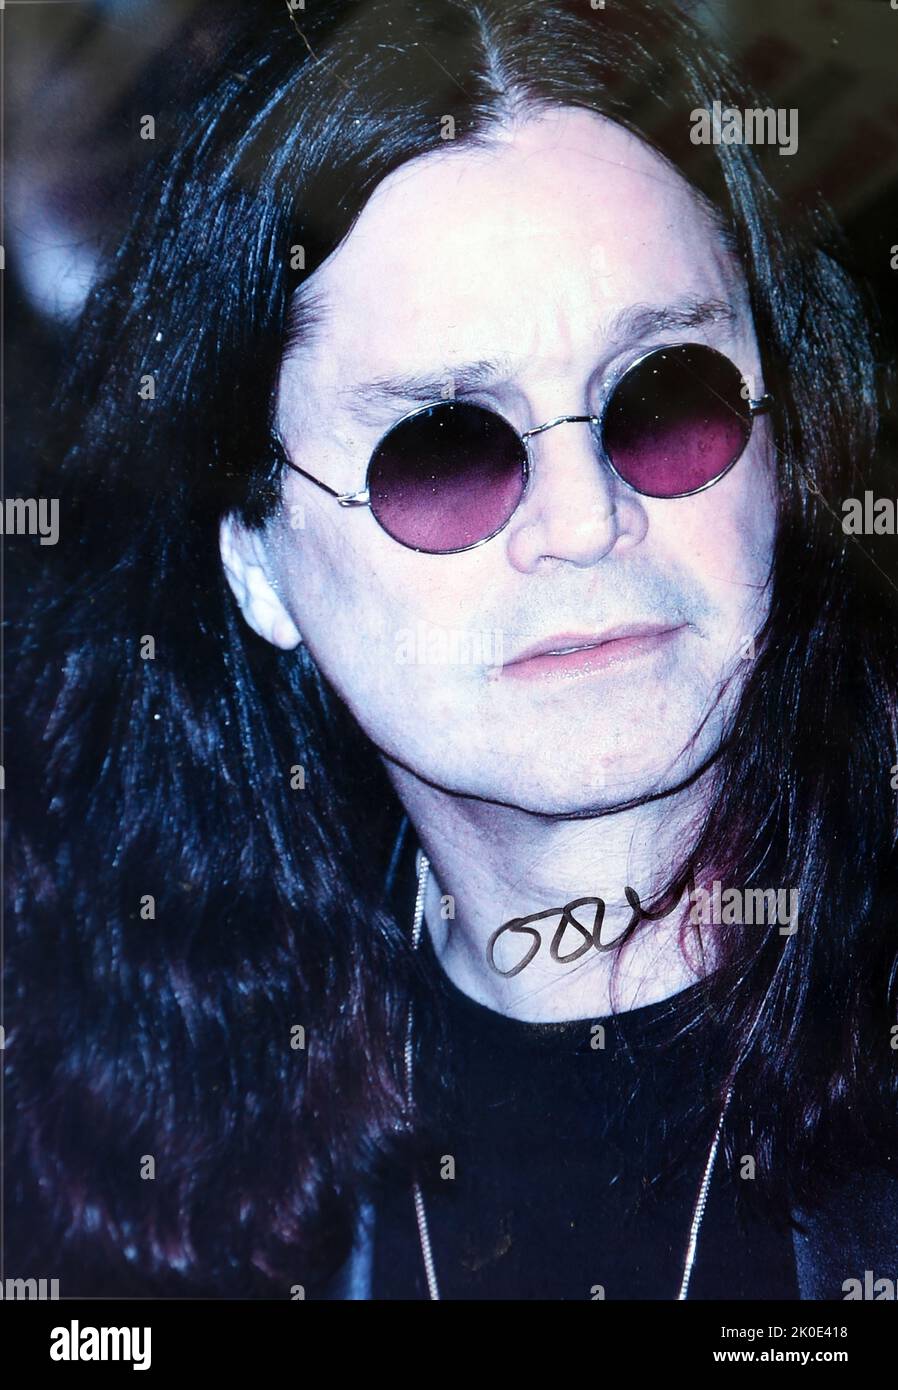 John Michael 'Ozzy' Osbourne (geboren 1948) ist ein englischer Sänger, Songwriter und Fernseherpersönlichkeit. Während der Jahre 1970s wurde er als Leadsänger der Heavy Metal Band Black Sabbath bekannt, in der er den Spitznamen 'Prince of Darkness' übernahm. Stockfoto